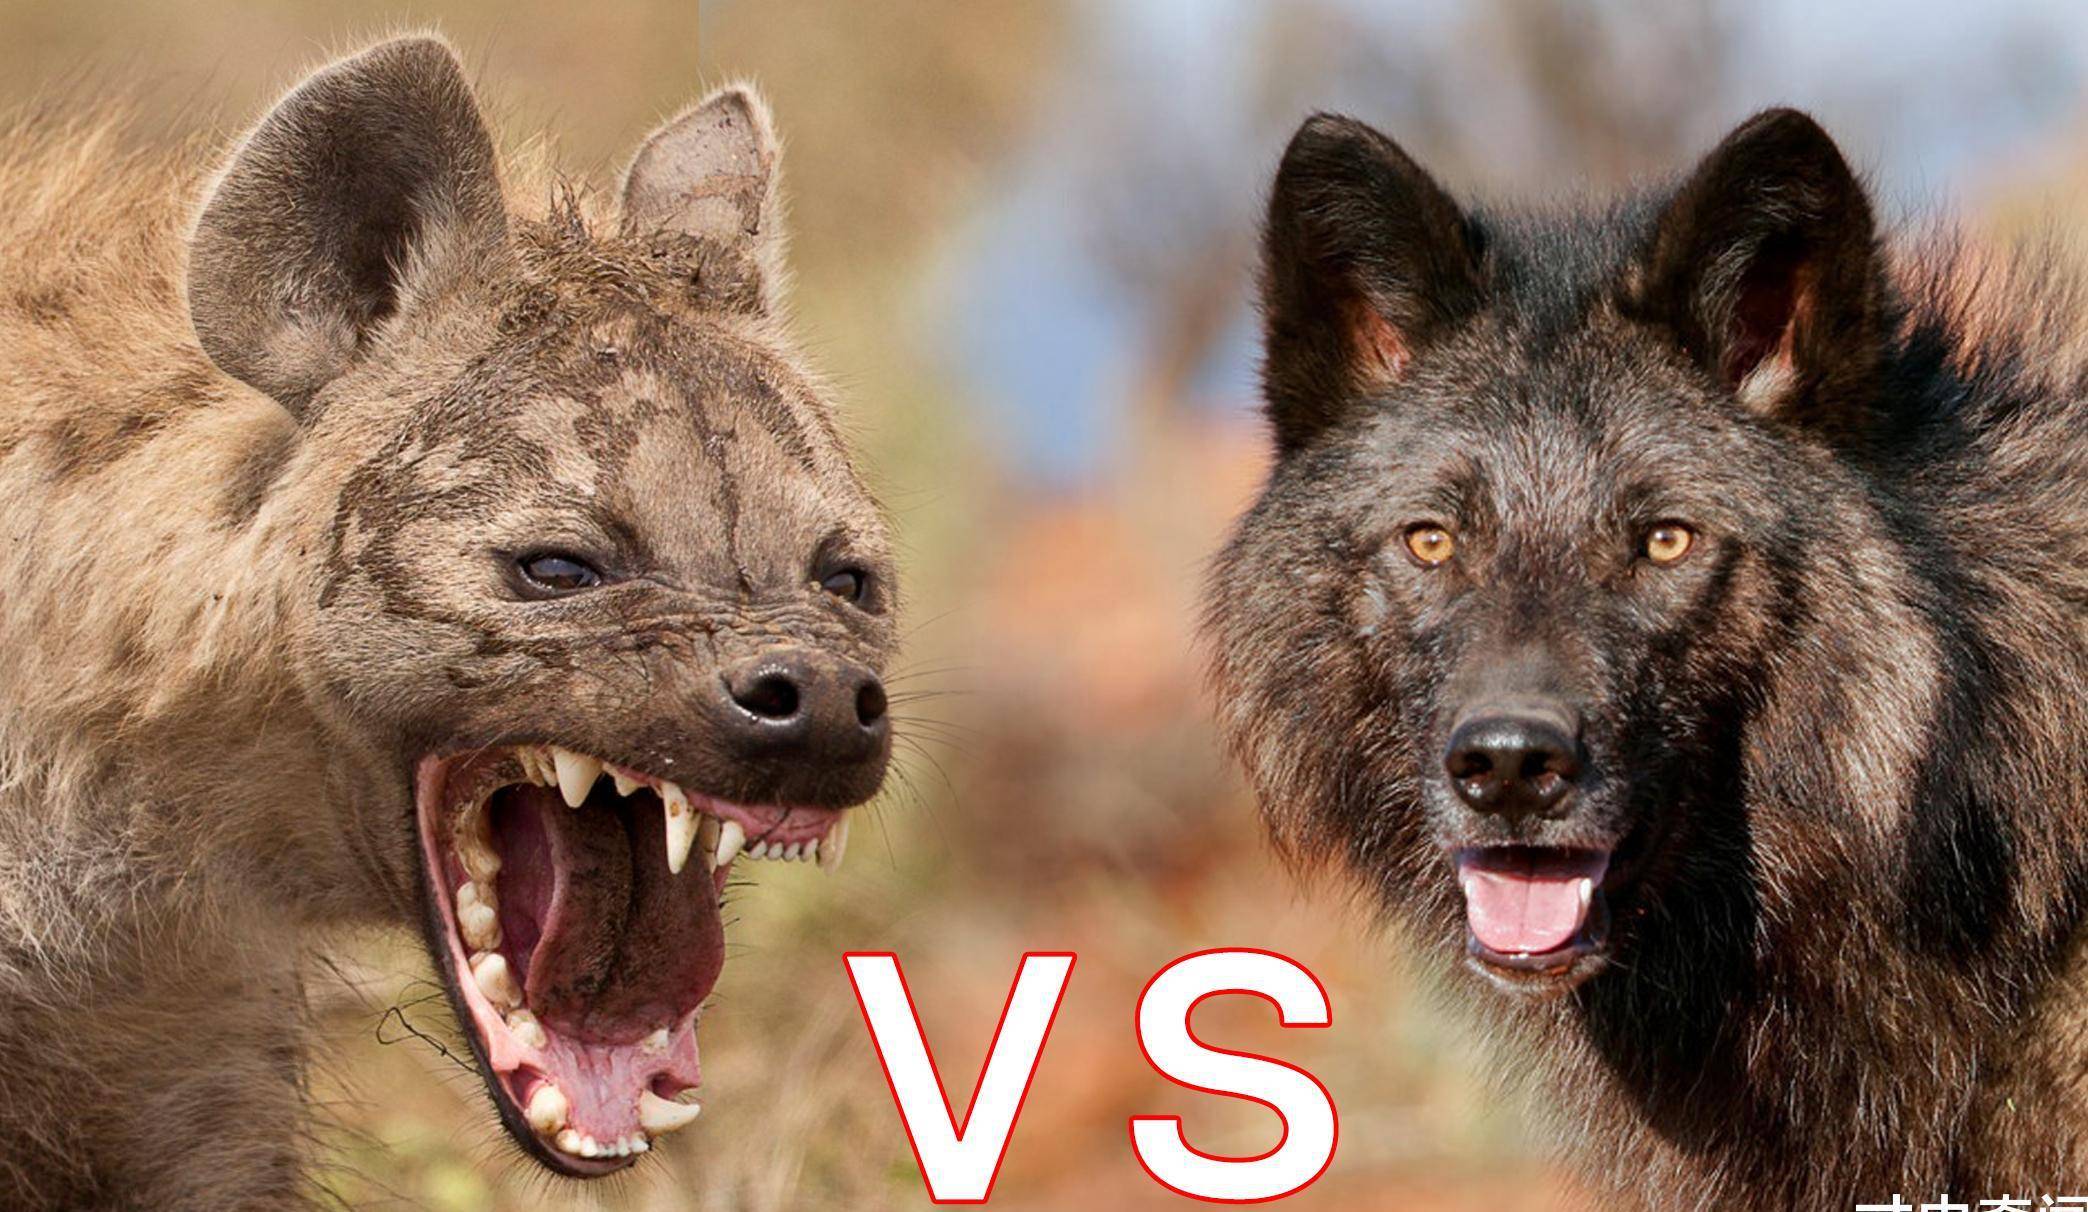 狭路相逢,分析超过2米高的北美灰狼,能否战胜非洲二哥